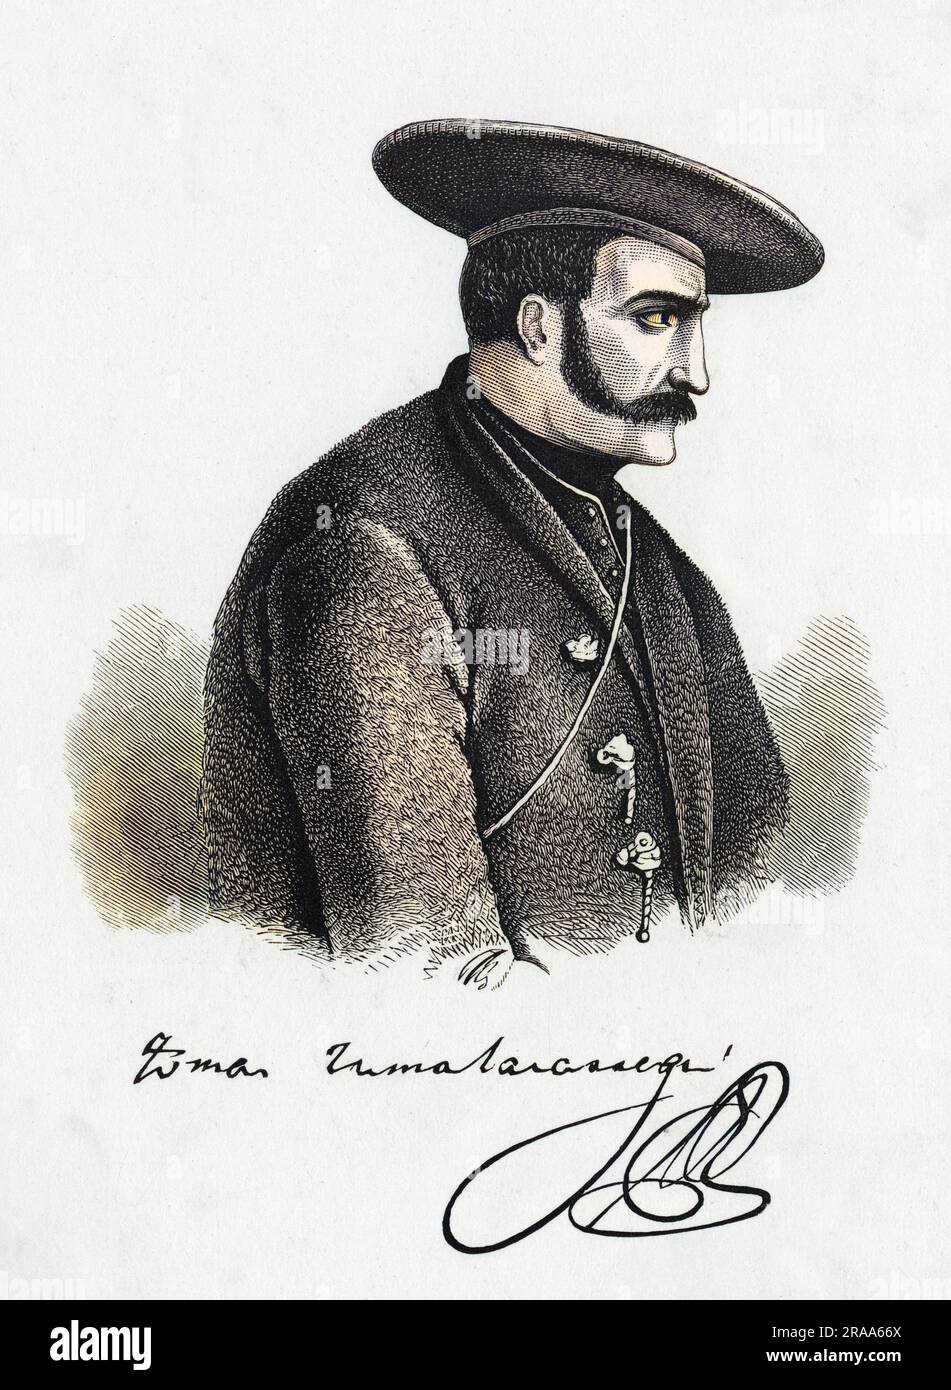 TOMAS ZUMALACARREGUI generale carlista spagnolo con il suo autografo Data: 1788 - 1835 Foto Stock